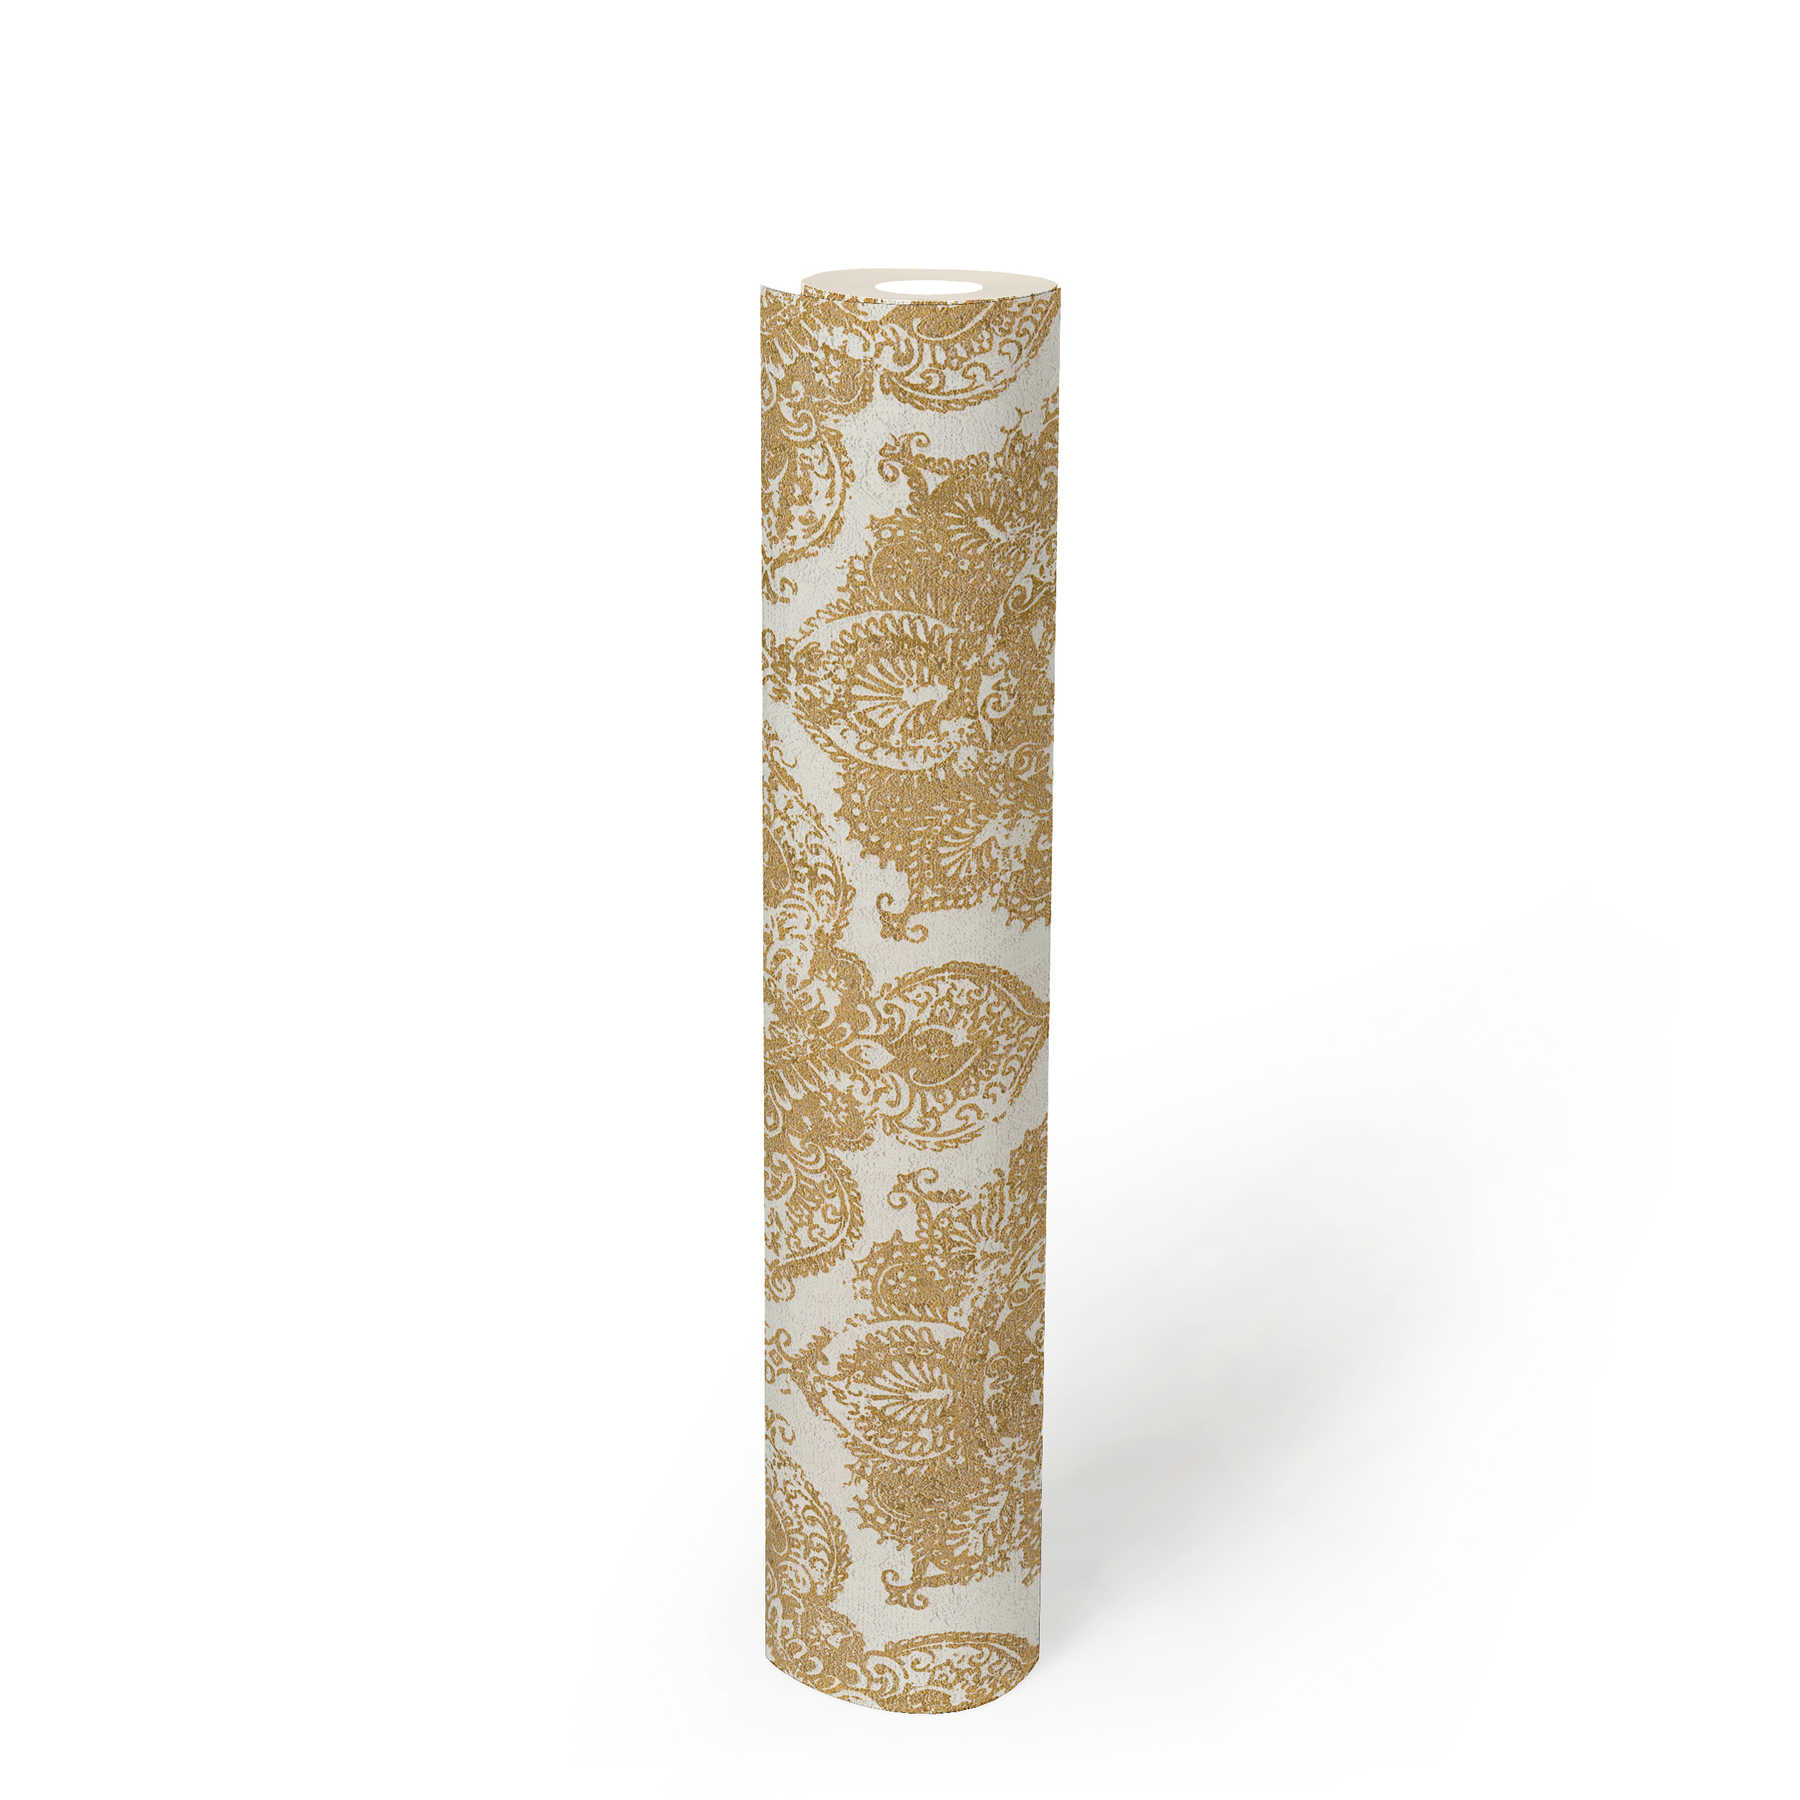             Papier peint style boho, ornement floral, aspect usé - or, blanc
        